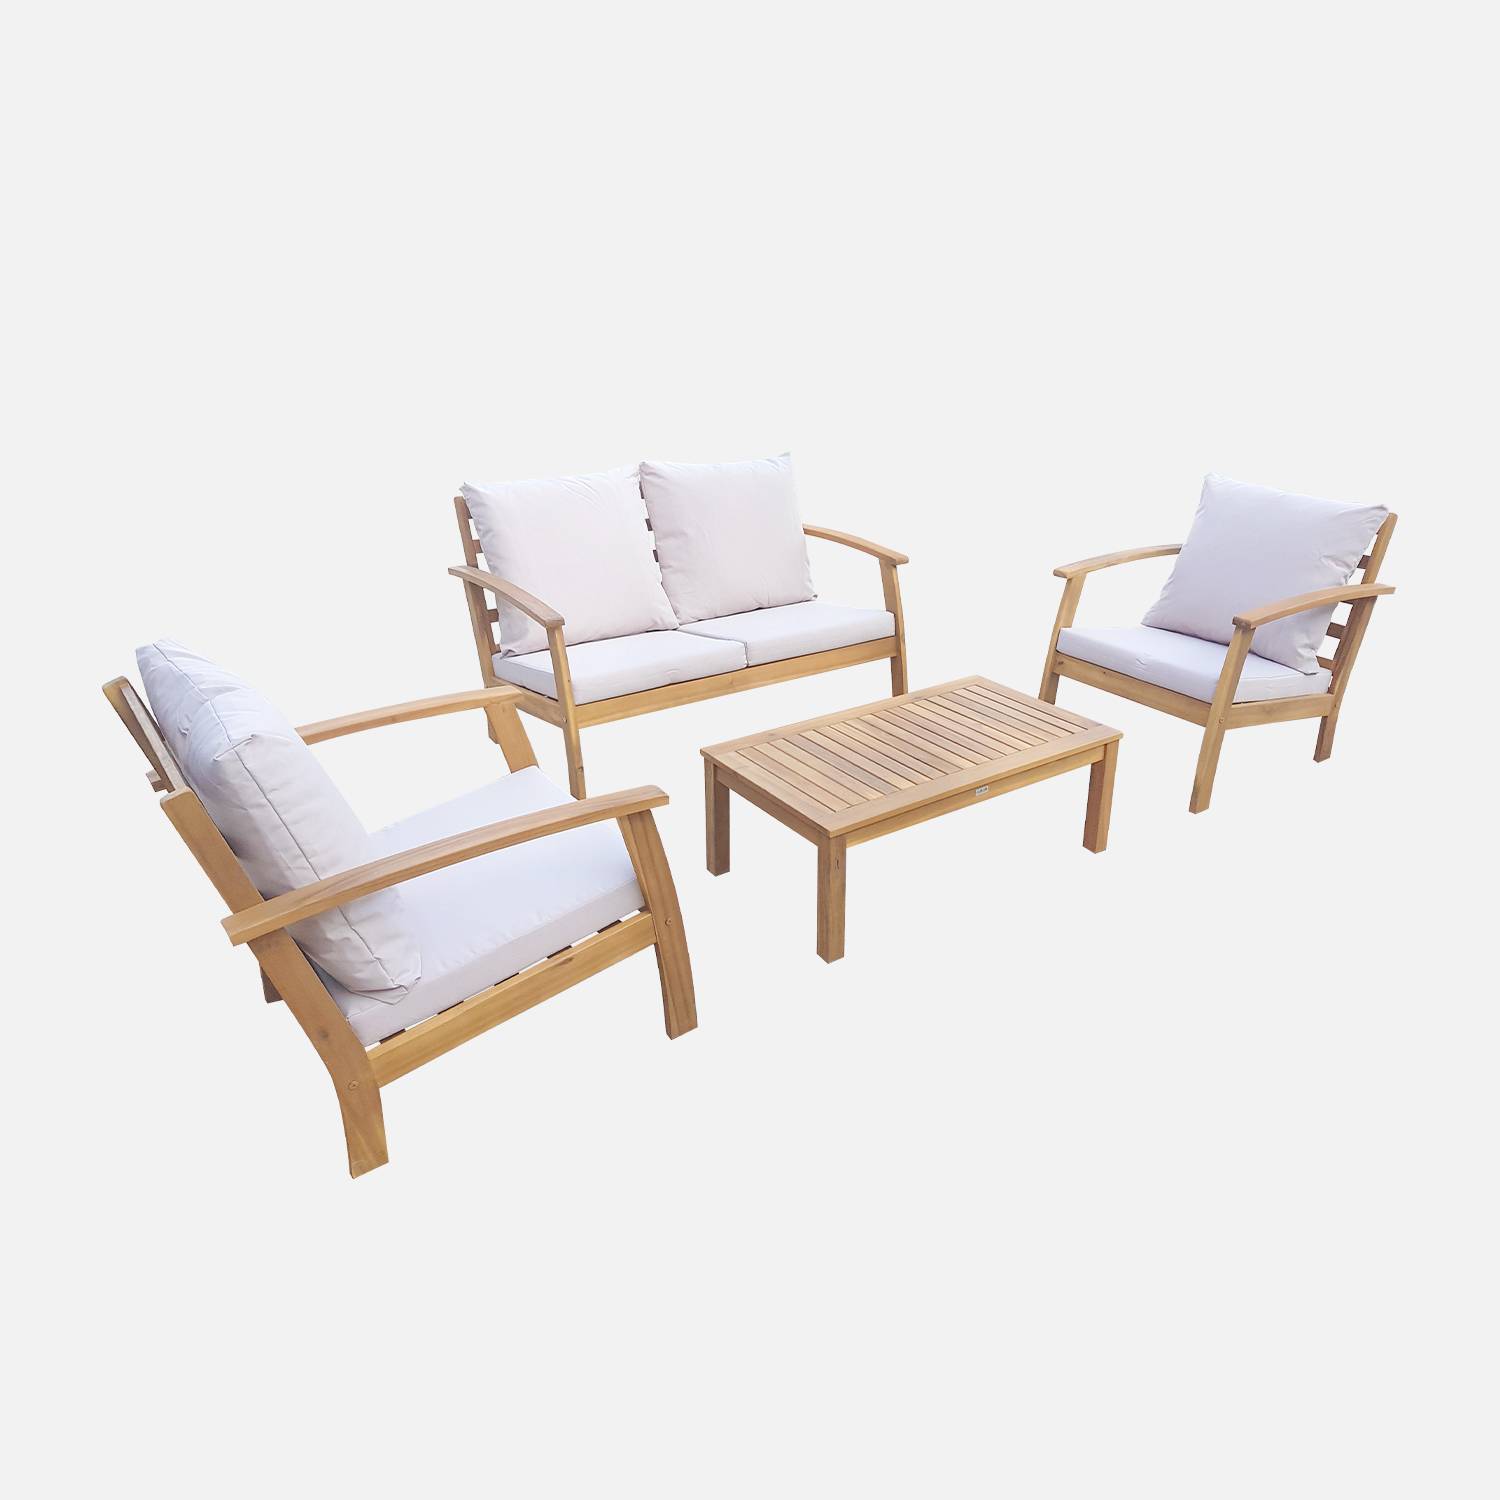 Salon de jardin en bois 4 places - Ushuaïa - Coussins écrus, canapé, fauteuils et table basse en acacia, design Photo5